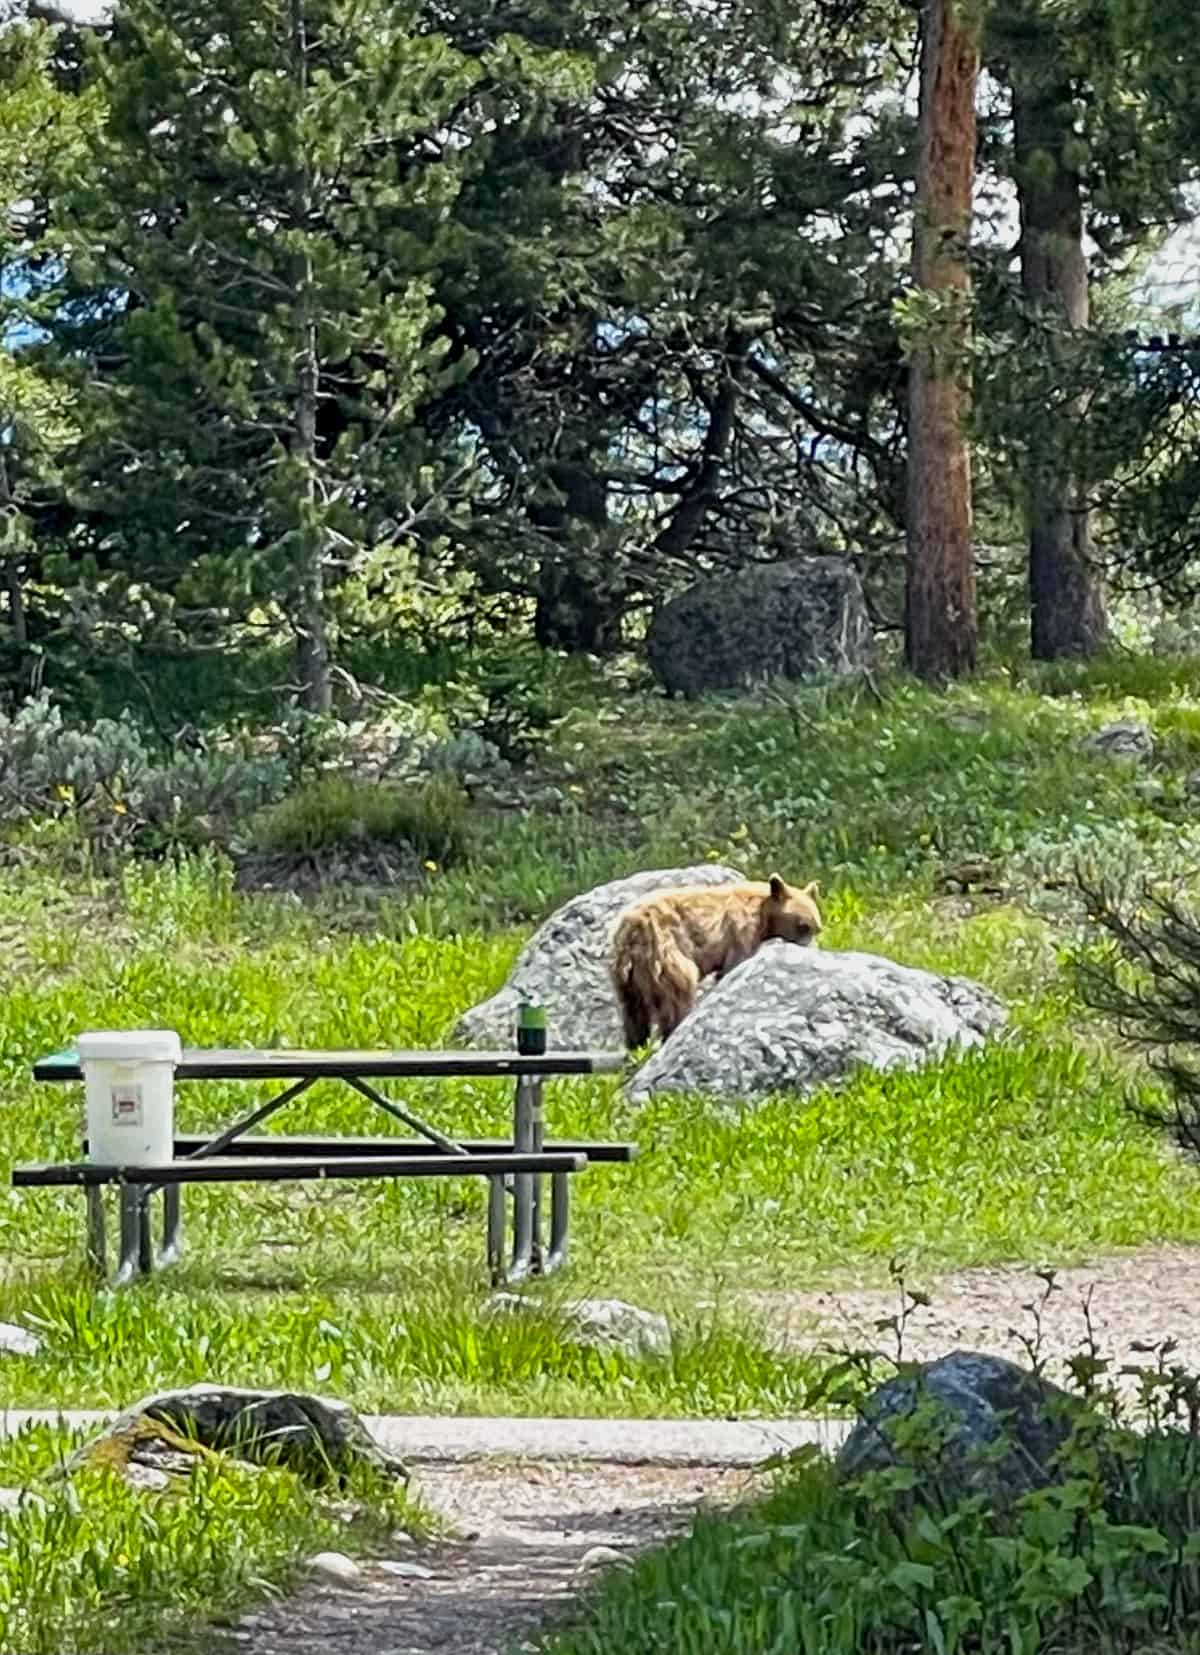 A bear on some rocks by Jenny Lake.